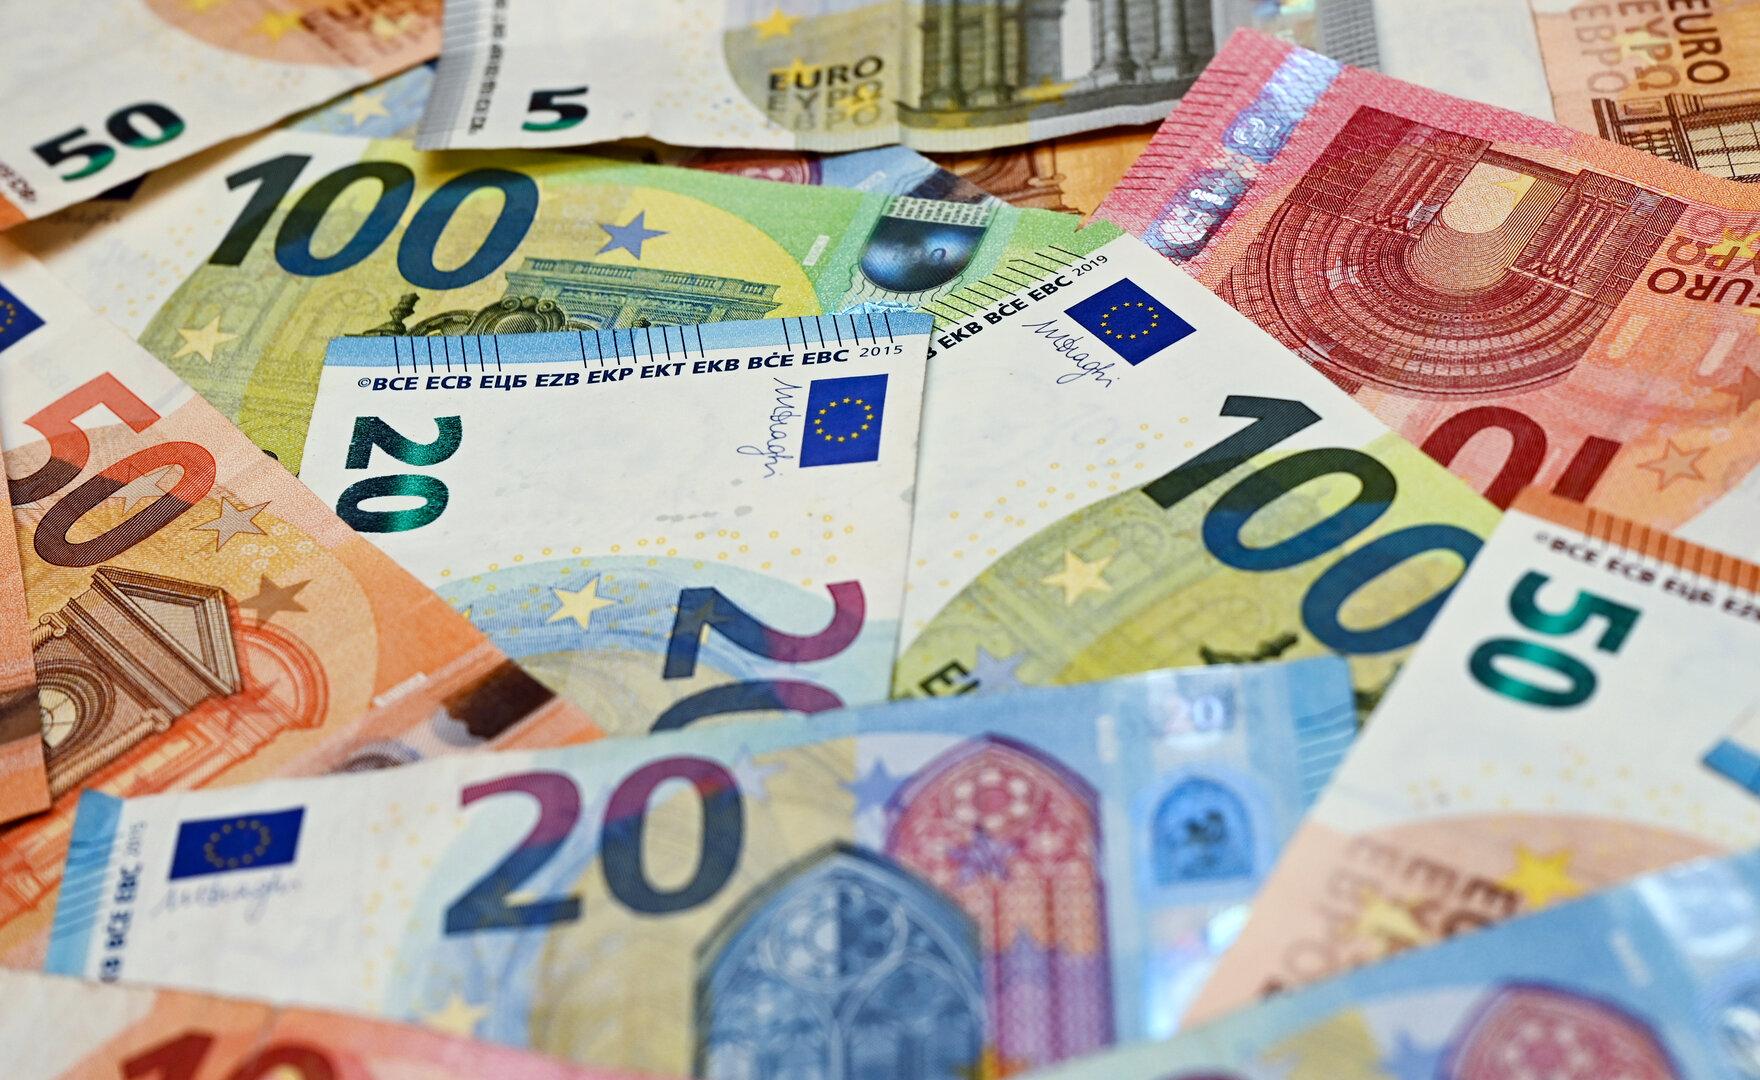 Mehr als 2,7 Mio. Euro aus NPO-Fonds an parteinahe Vereine